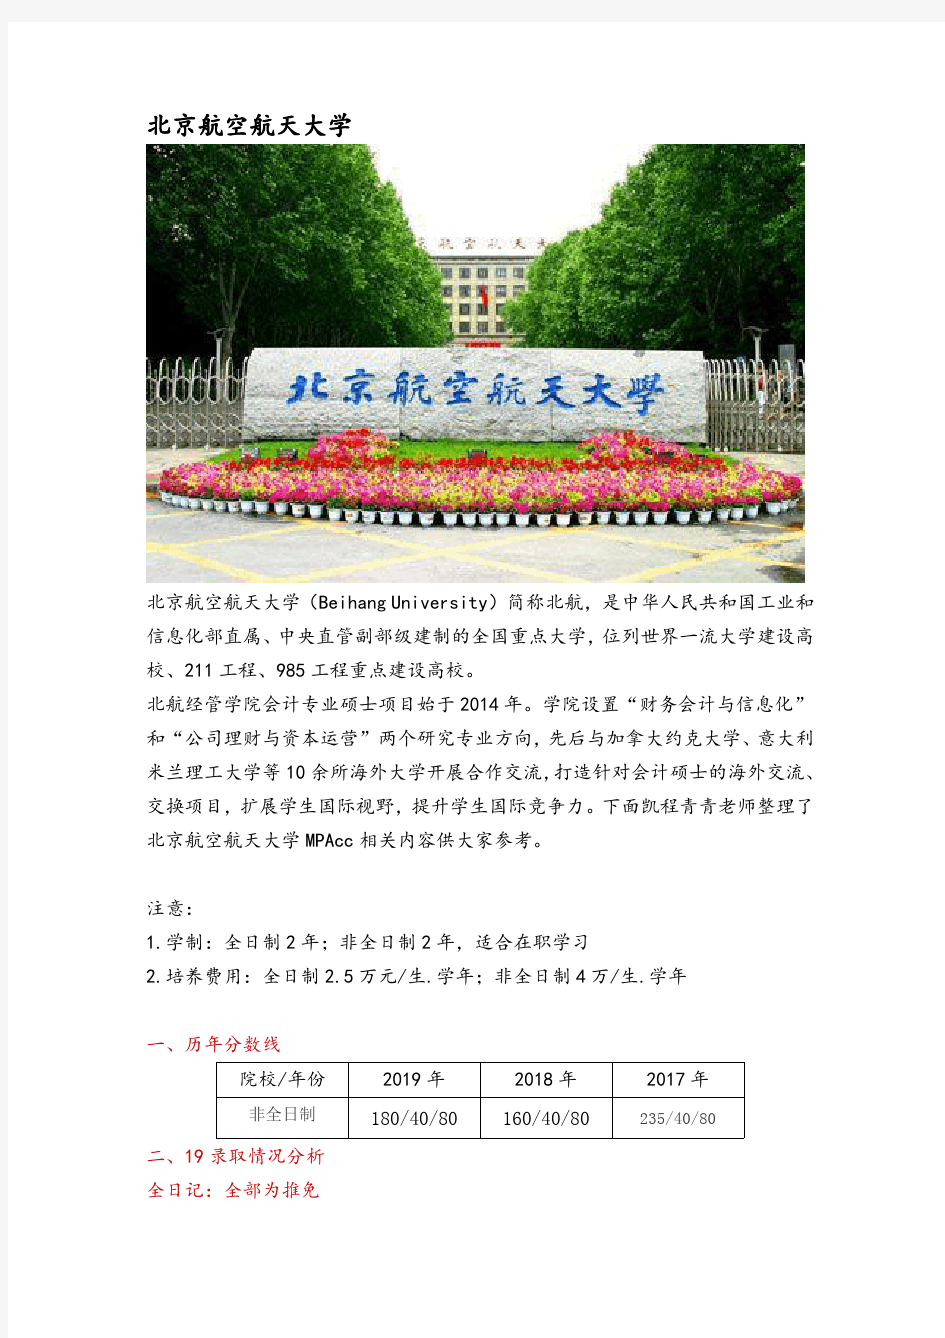 北京地区会计硕士(MPAcc)院校分析—北京航空航天大学